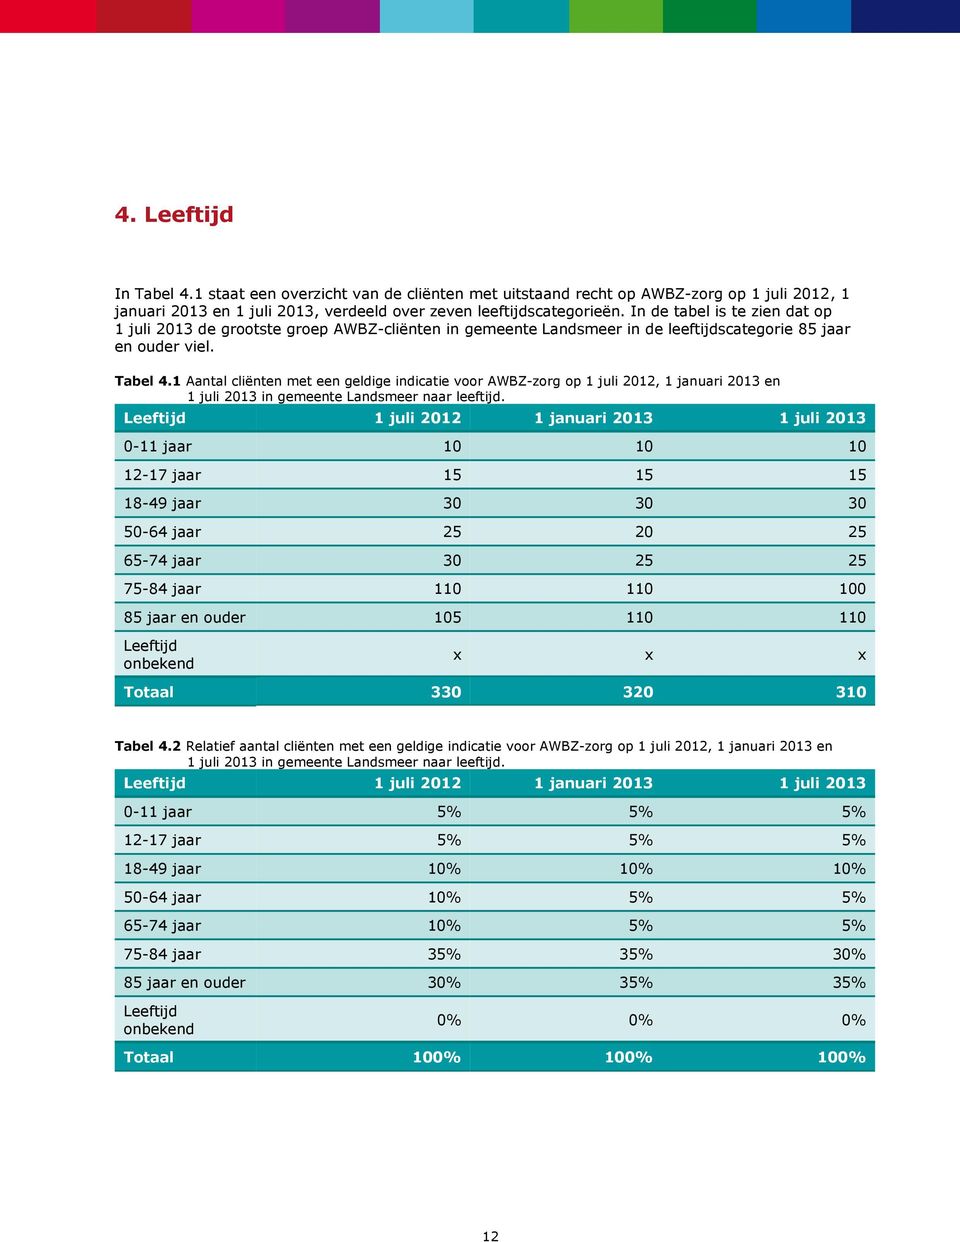 1 Aantal cliënten met een geldige indicatie voor AWBZ-zorg op 1 juli 2012, 1 januari 2013 en 1 juli 2013 in gemeente Landsmeer naar leeftijd.